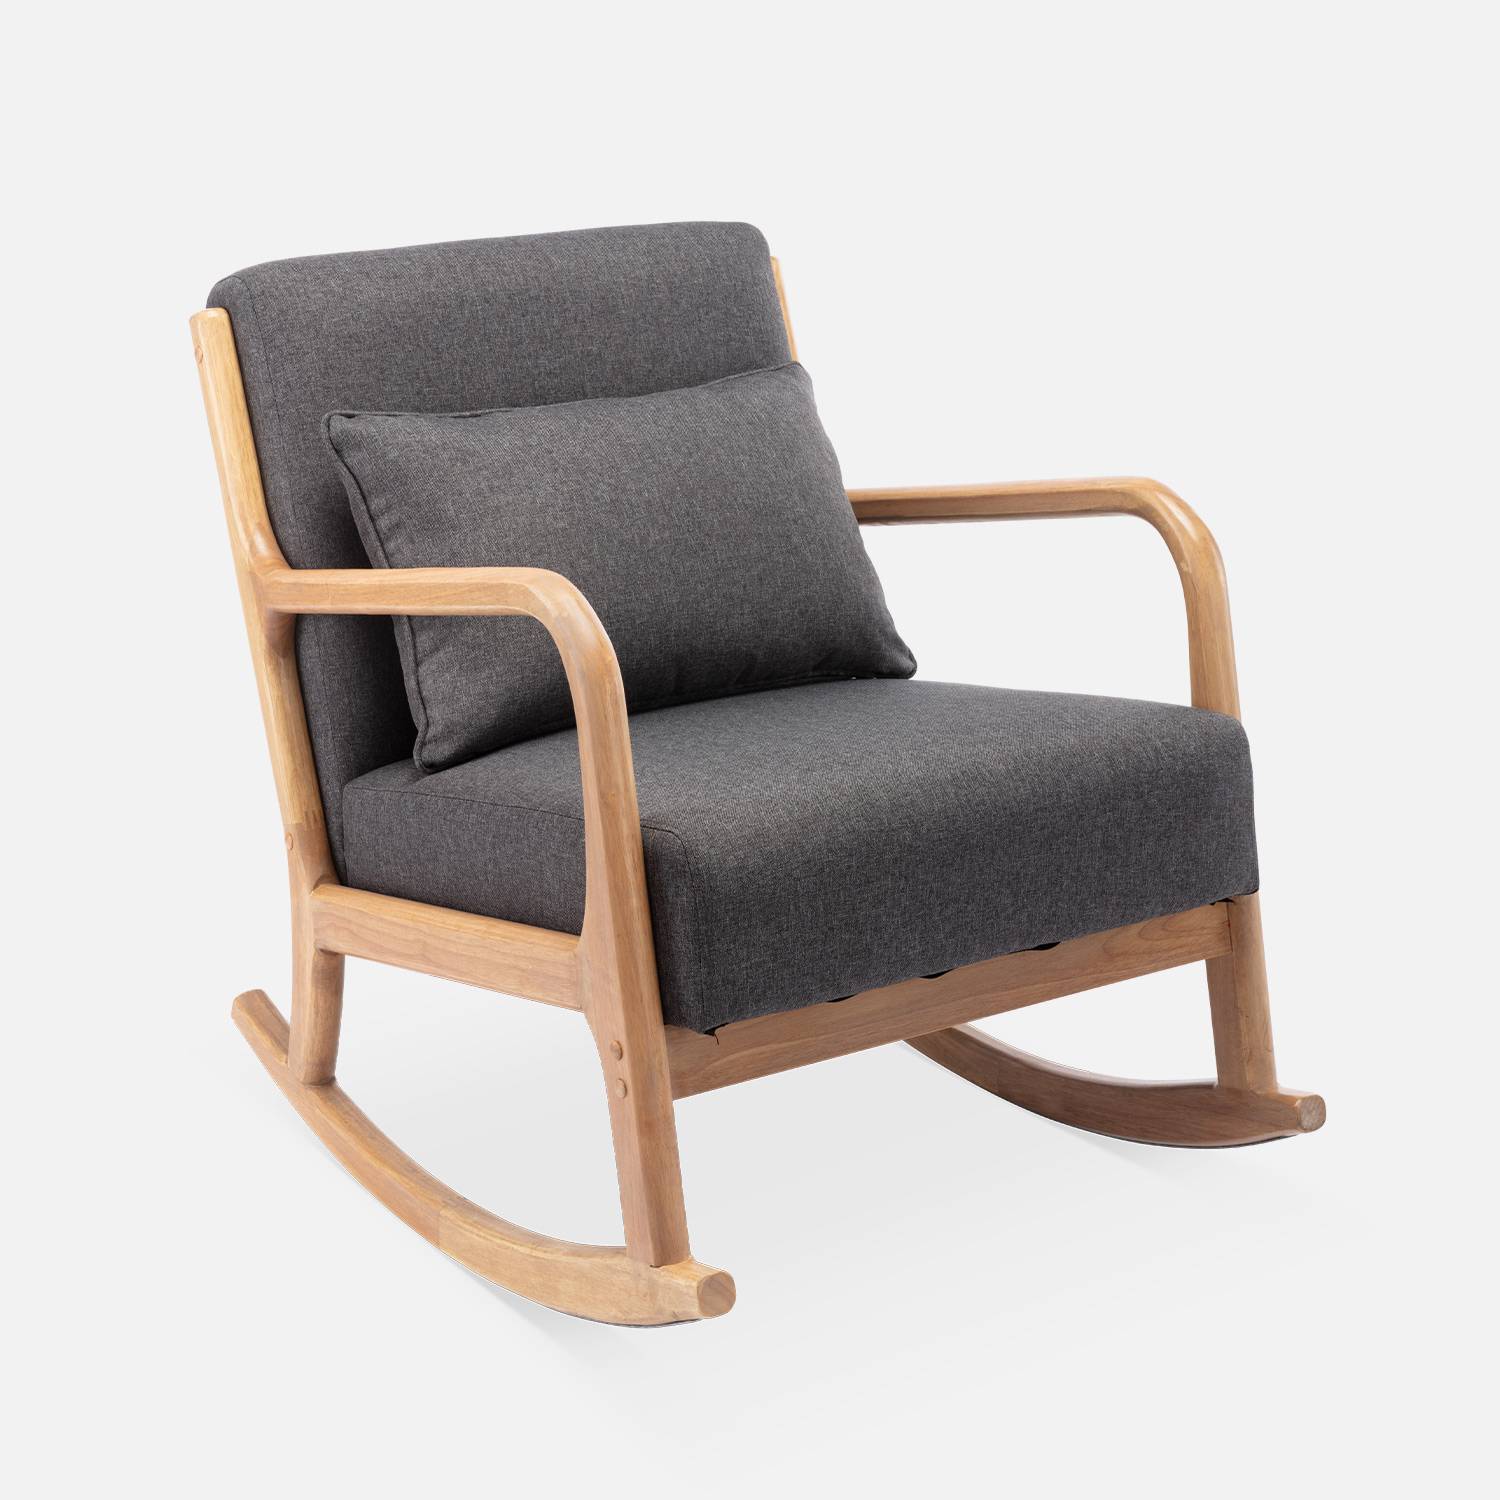 Fauteuil à bascule design en bois et tissu, 1 place, rocking chair scandinave, gris foncé Photo2